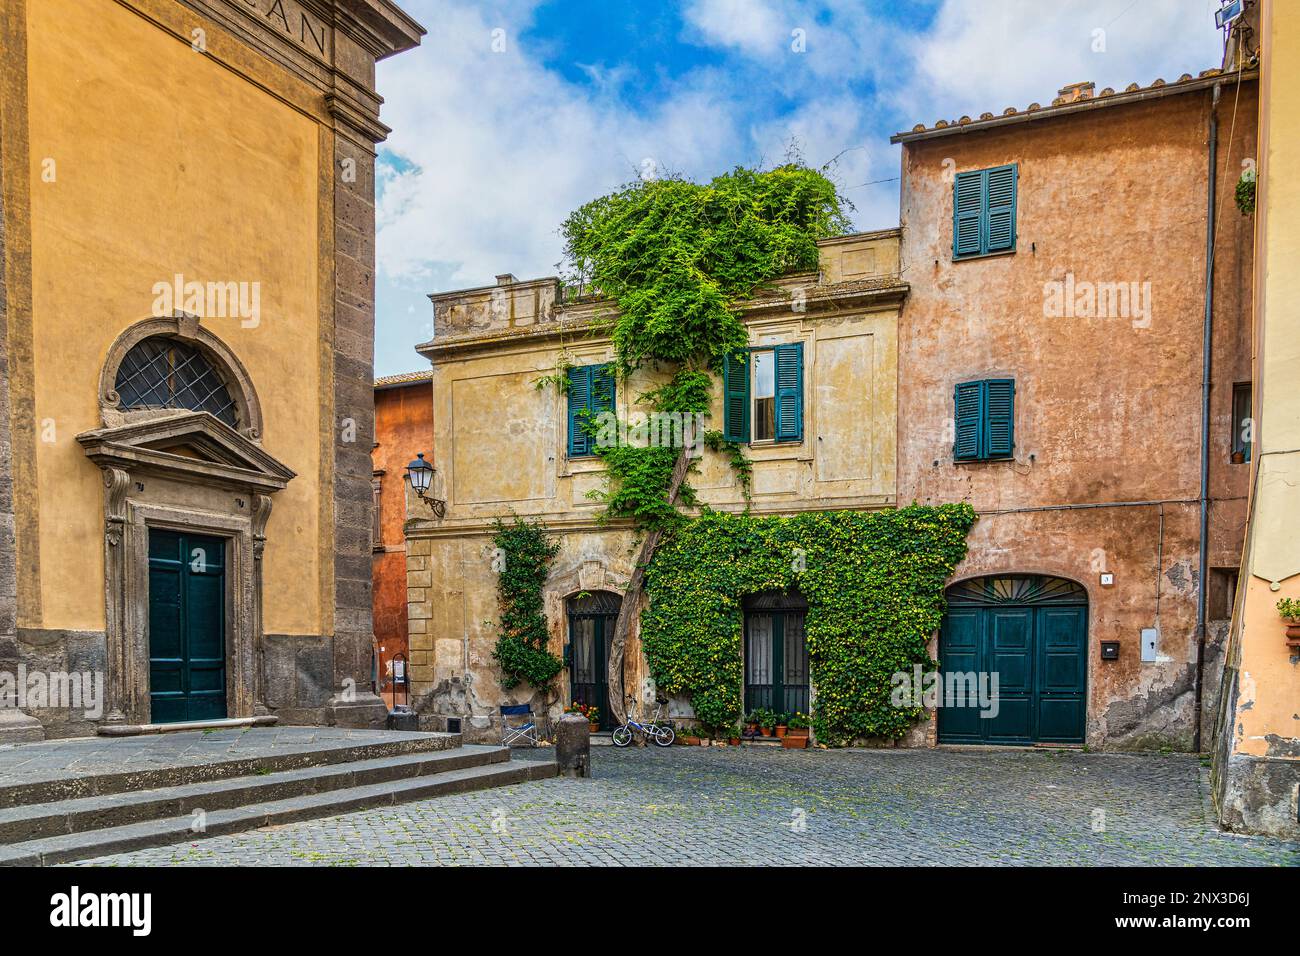 Aperçu de vieilles maisons colorées avec une porte et une porte vertes et une plante grimpante sur le mur. Tuscania, province de Viterbo, Latium, Italie, Europe Banque D'Images